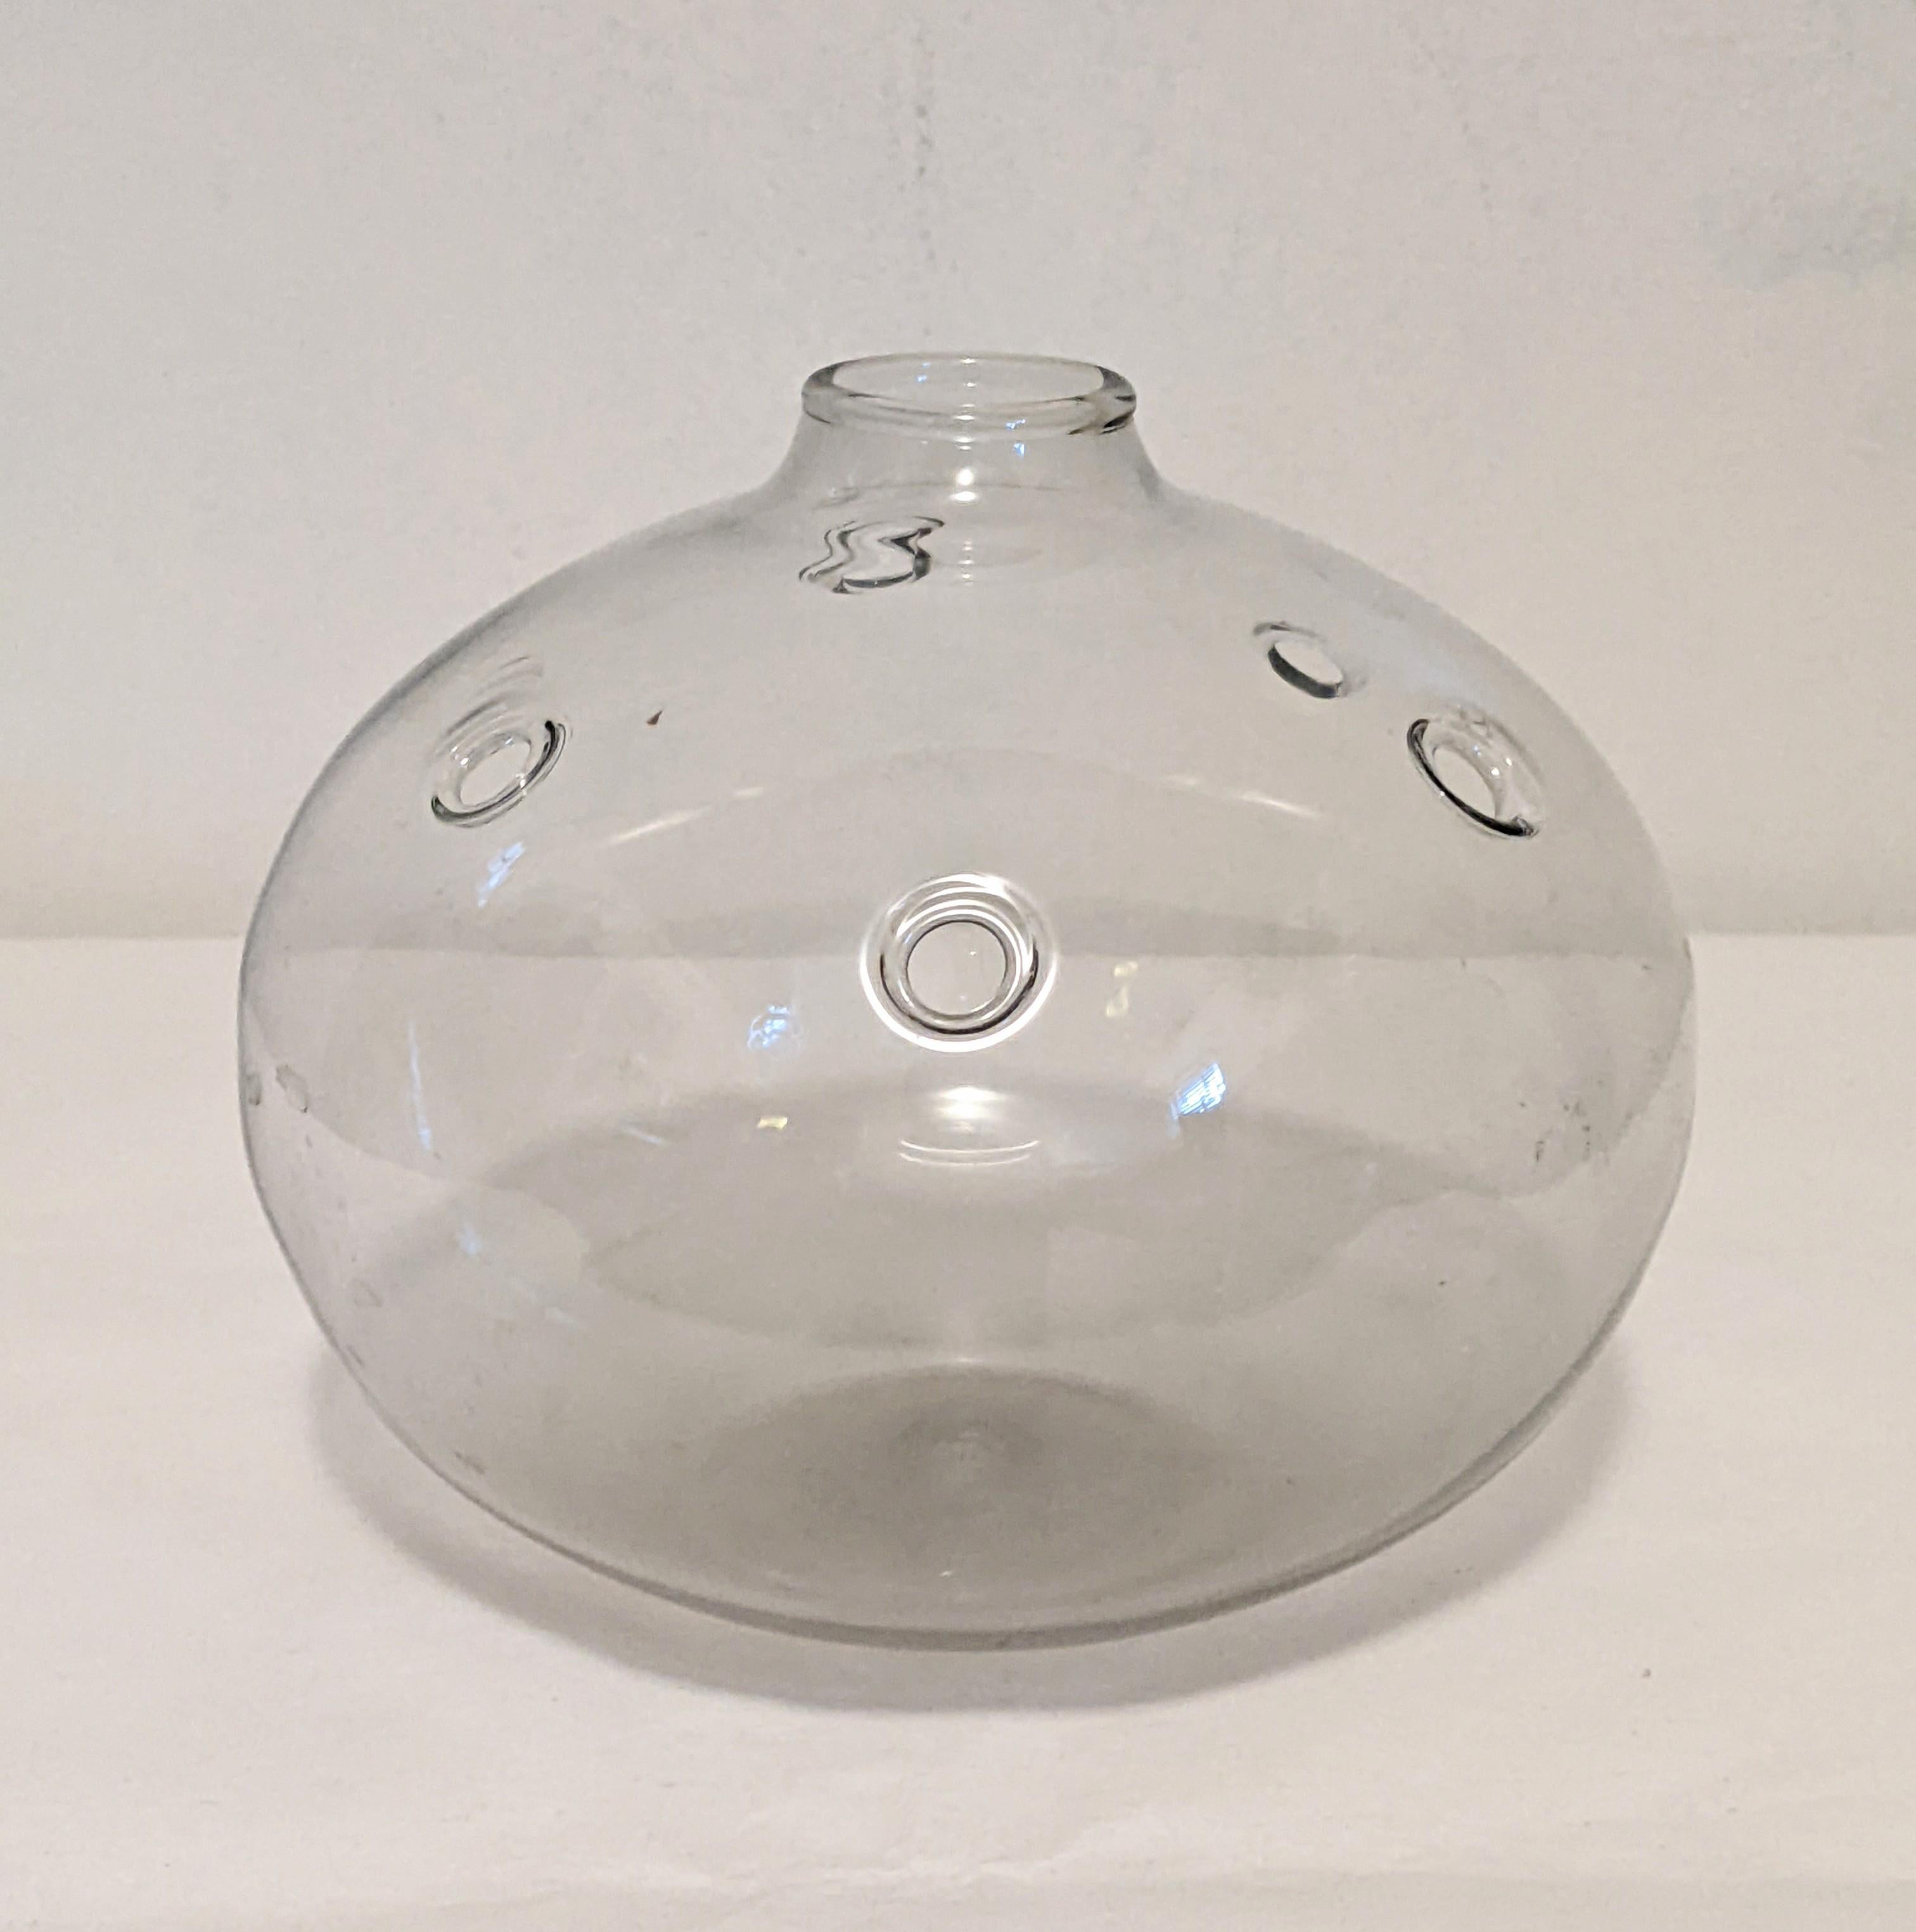 Vase Hull (trou) en verre transparent soufflé à la bouche, conçu par Michael Bang pour Holmegaard Danemark, années 1970. Produit entre 1973 et 1978.
Le vase a plusieurs trous pour placer et arranger les fleurs dans le style Ikebana. 
6